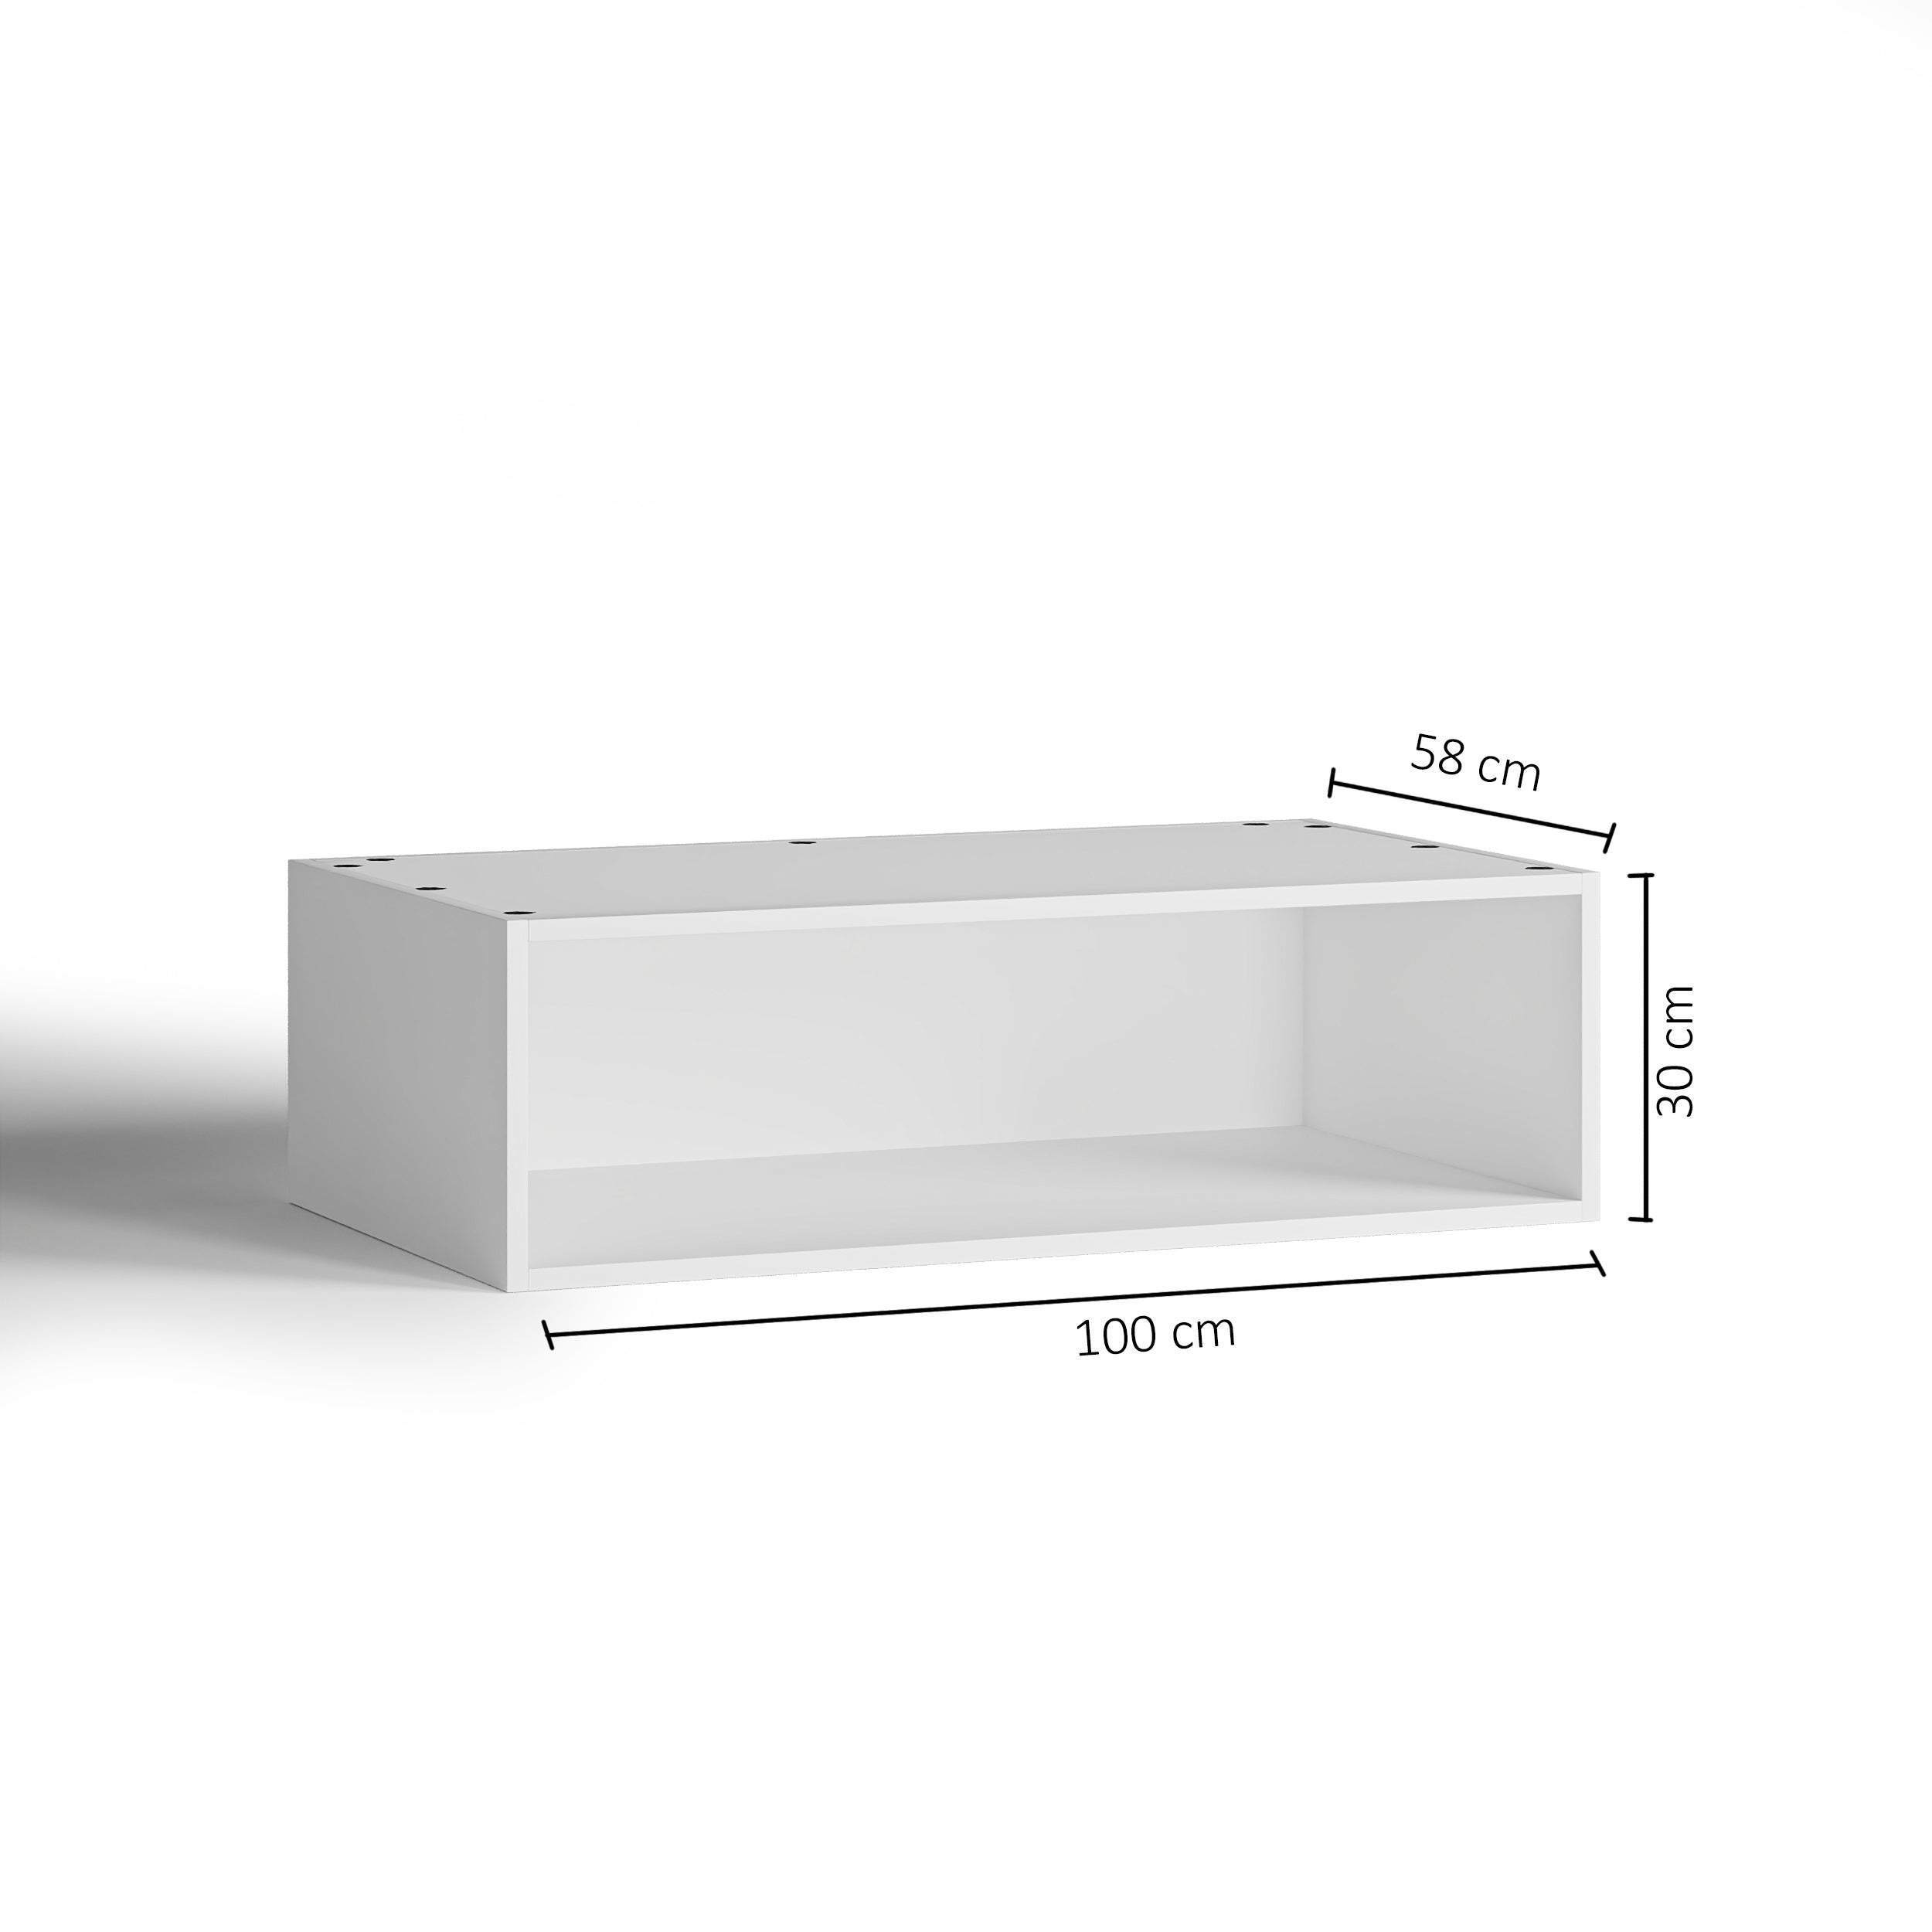 100x30 - Cabinet (58cm D) No Doors - PAX